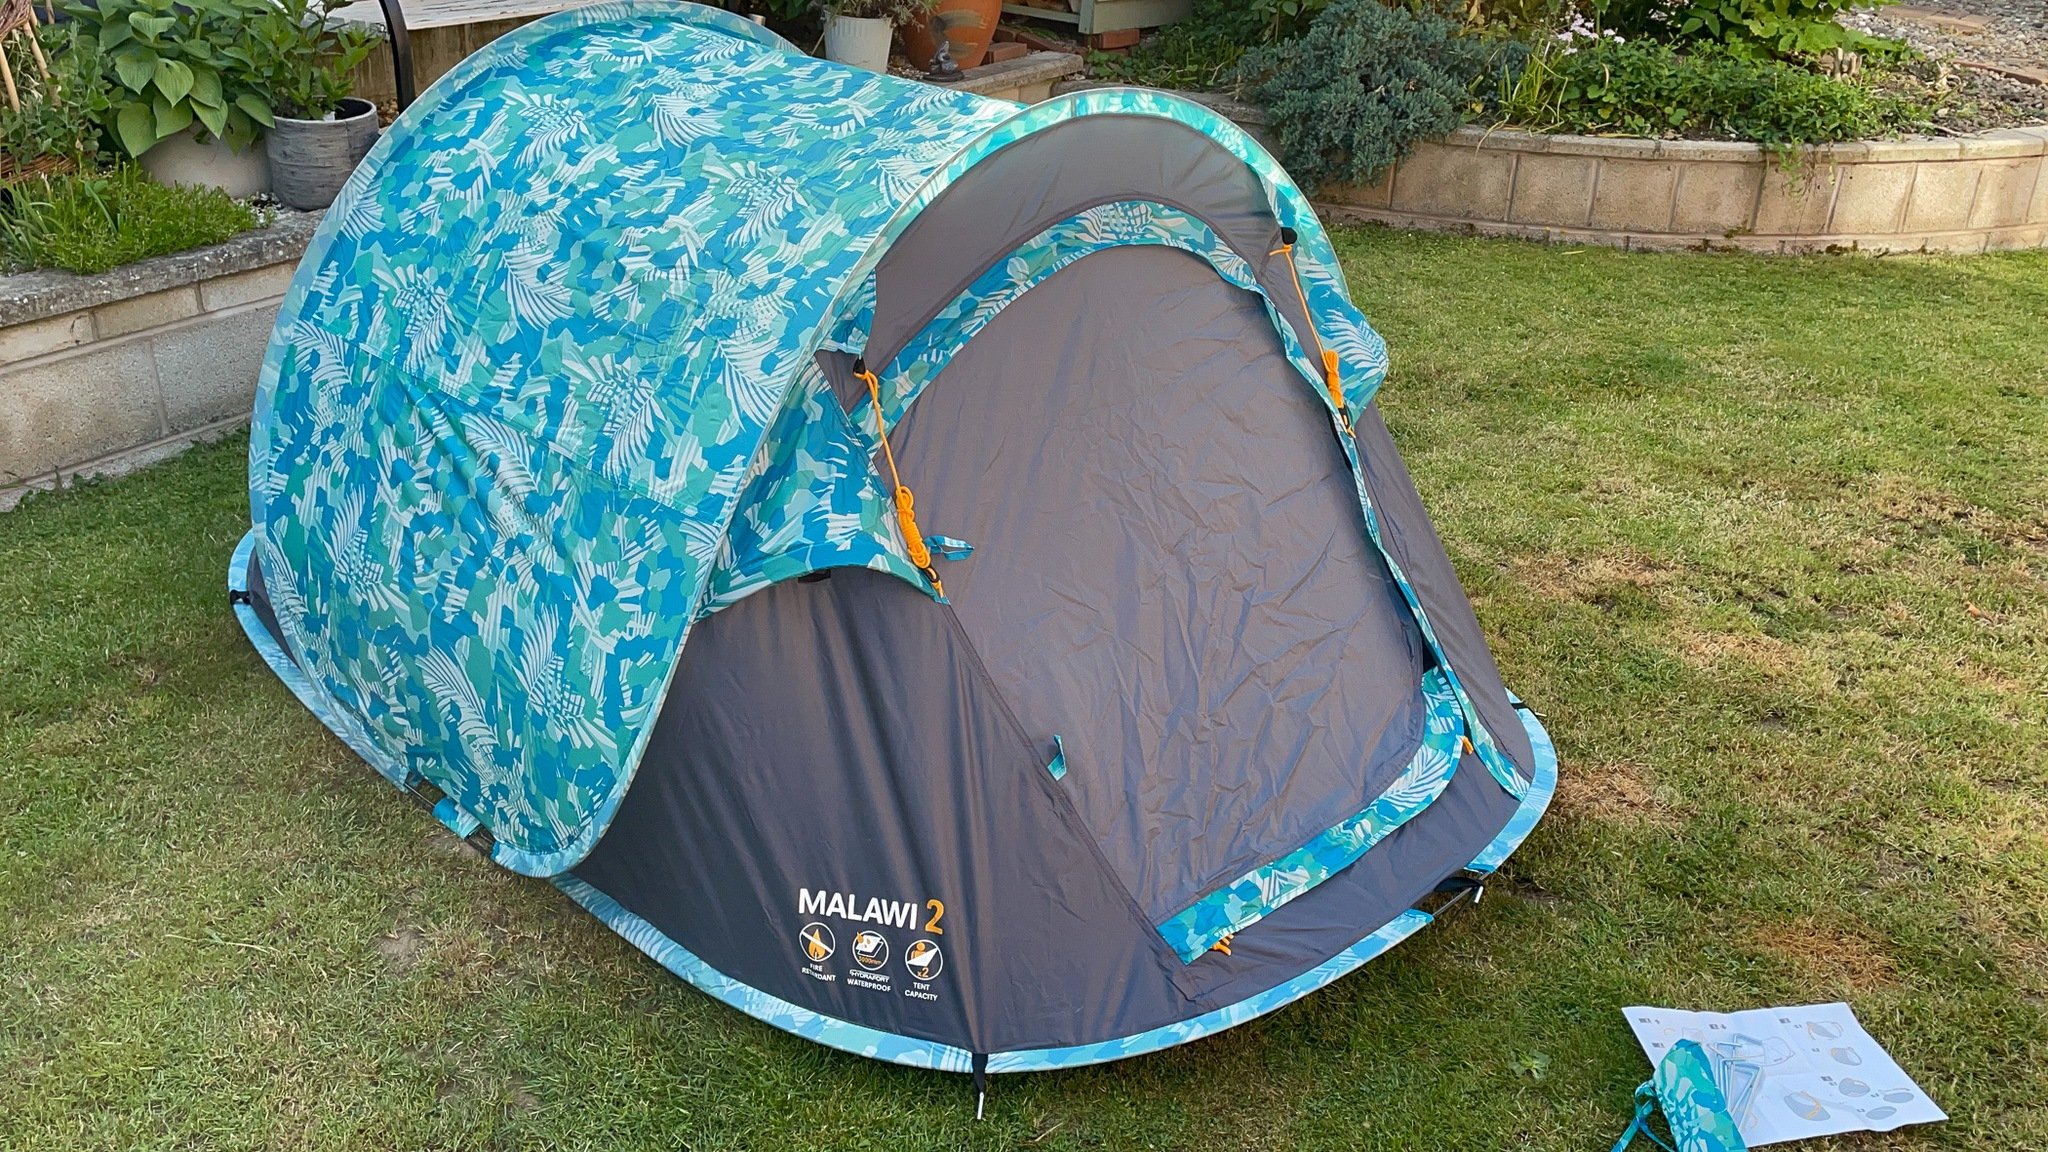 The Regatta Malawi 2 tent